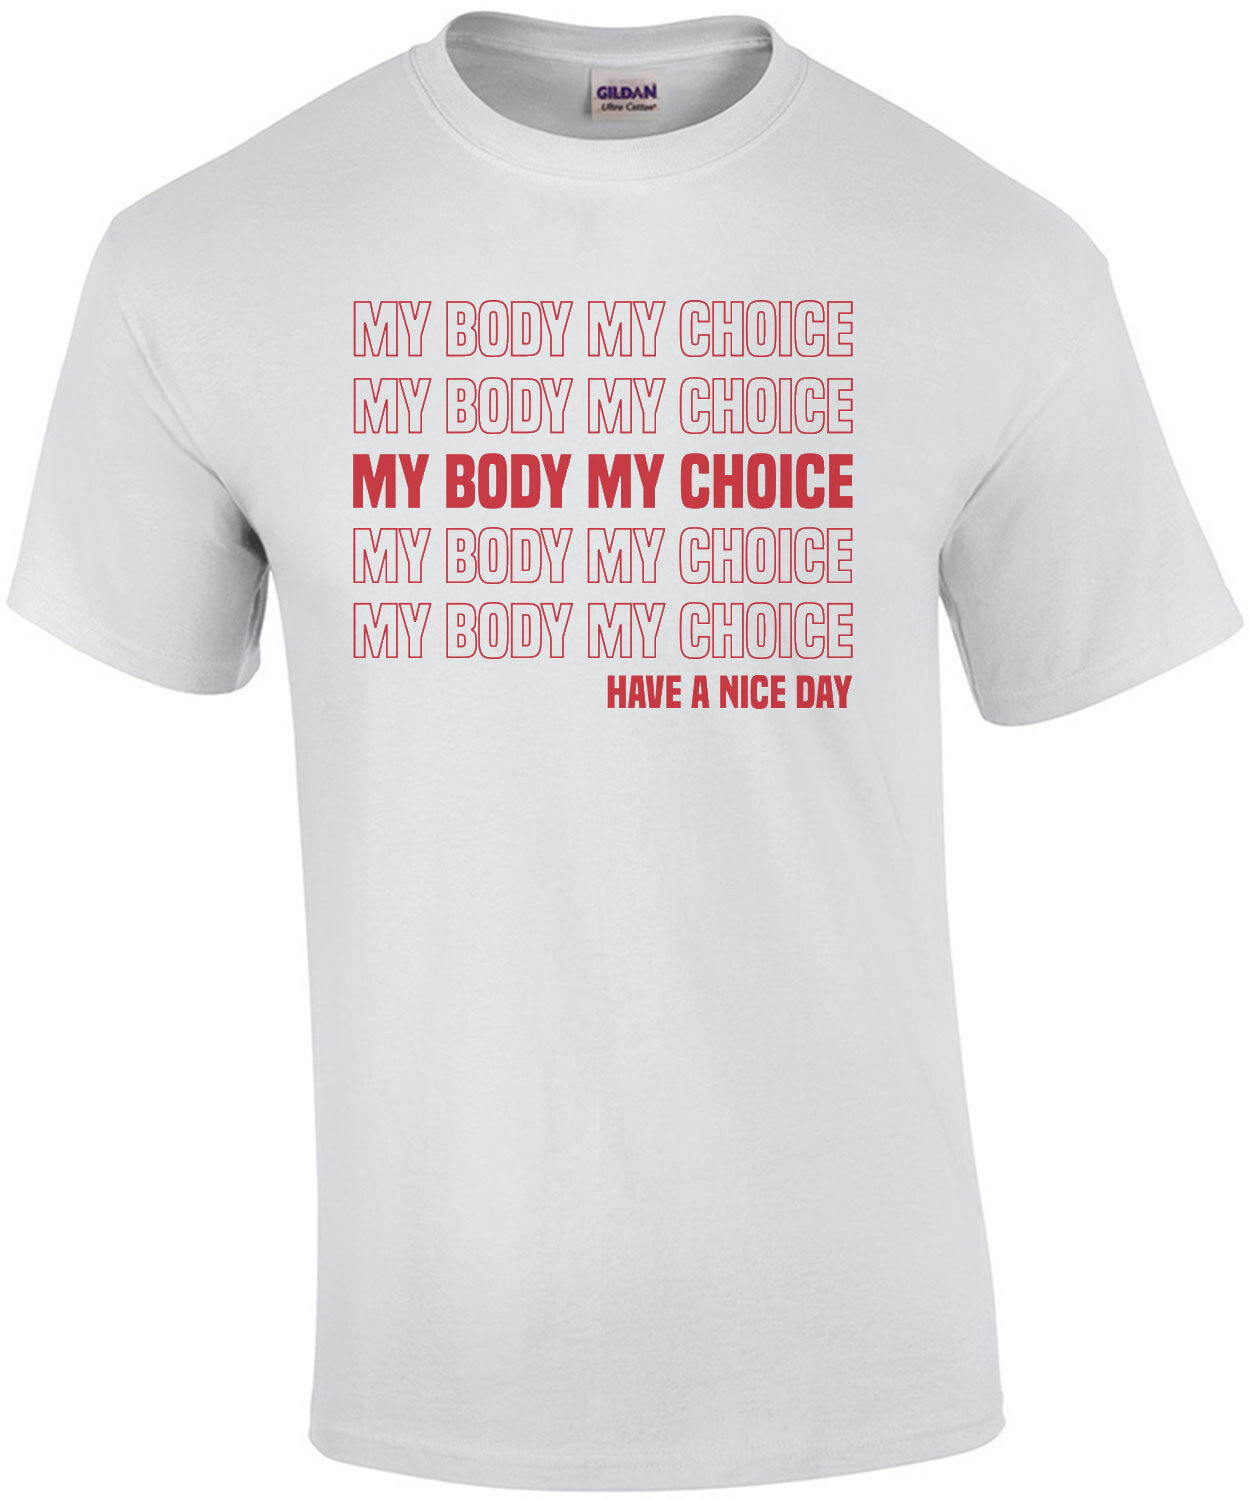 My body my choice - pro-Abortion, pro-choice T-Shirt